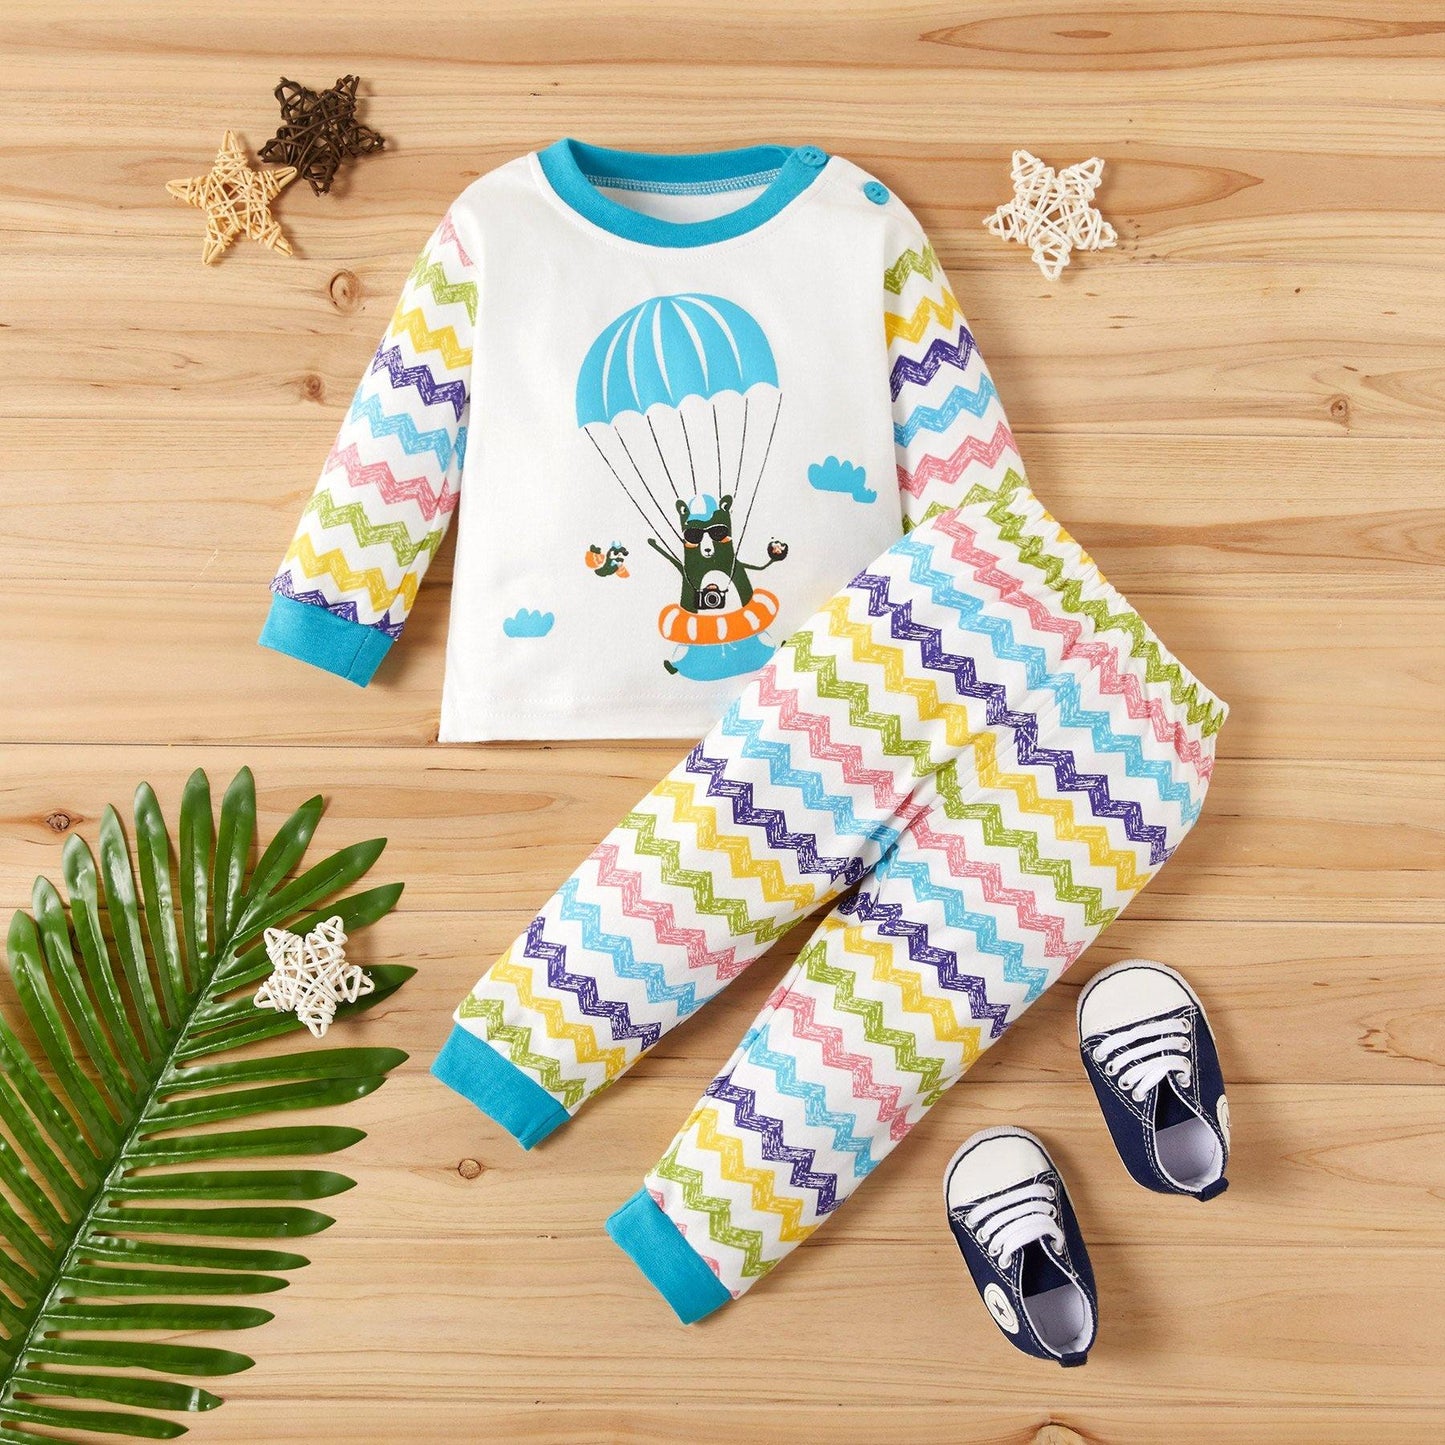 Baby / Toddler Striped Pants Set NZ - Yara clothing nz